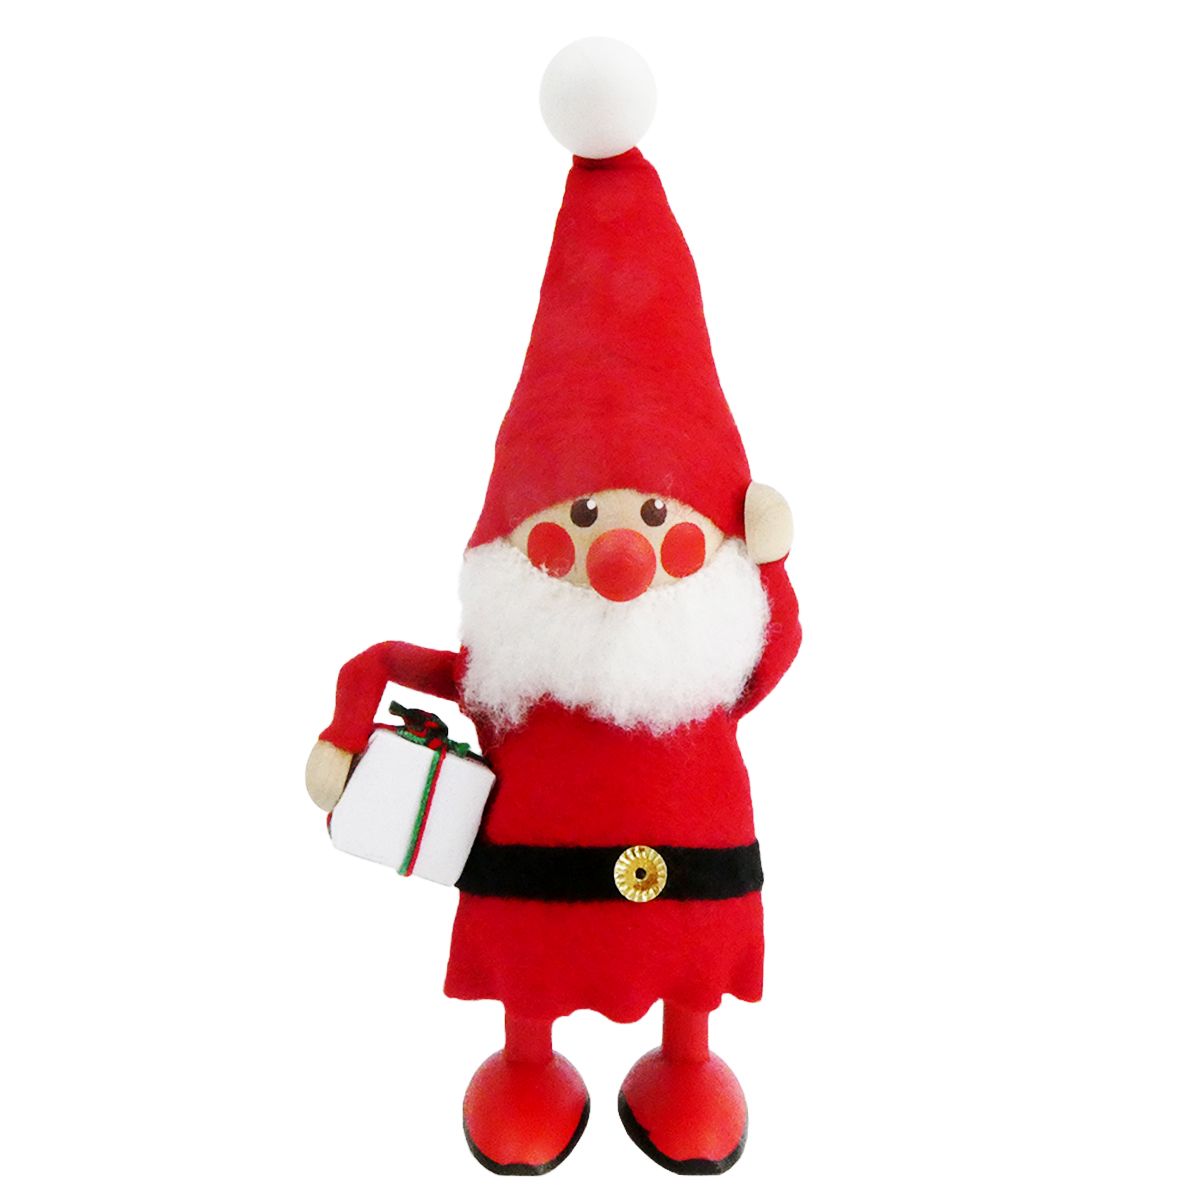 ノルディカ ニッセ クリスマス 木製人形 プレゼントを持ったサンタ